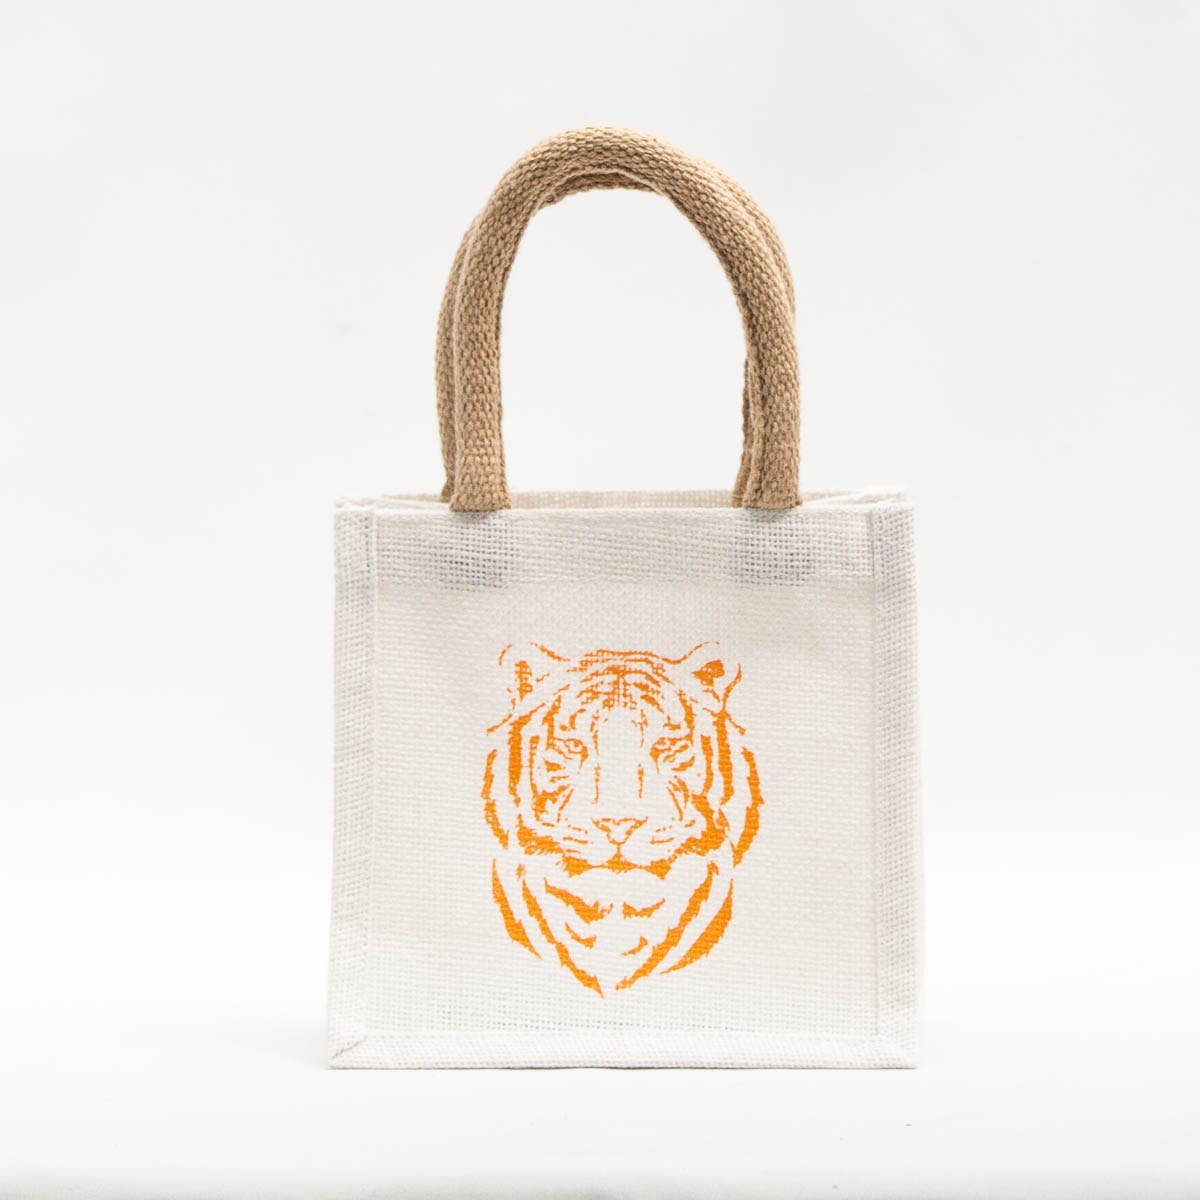 Easy Tiger Petite Gift Tote   White/Orange   7x7x5